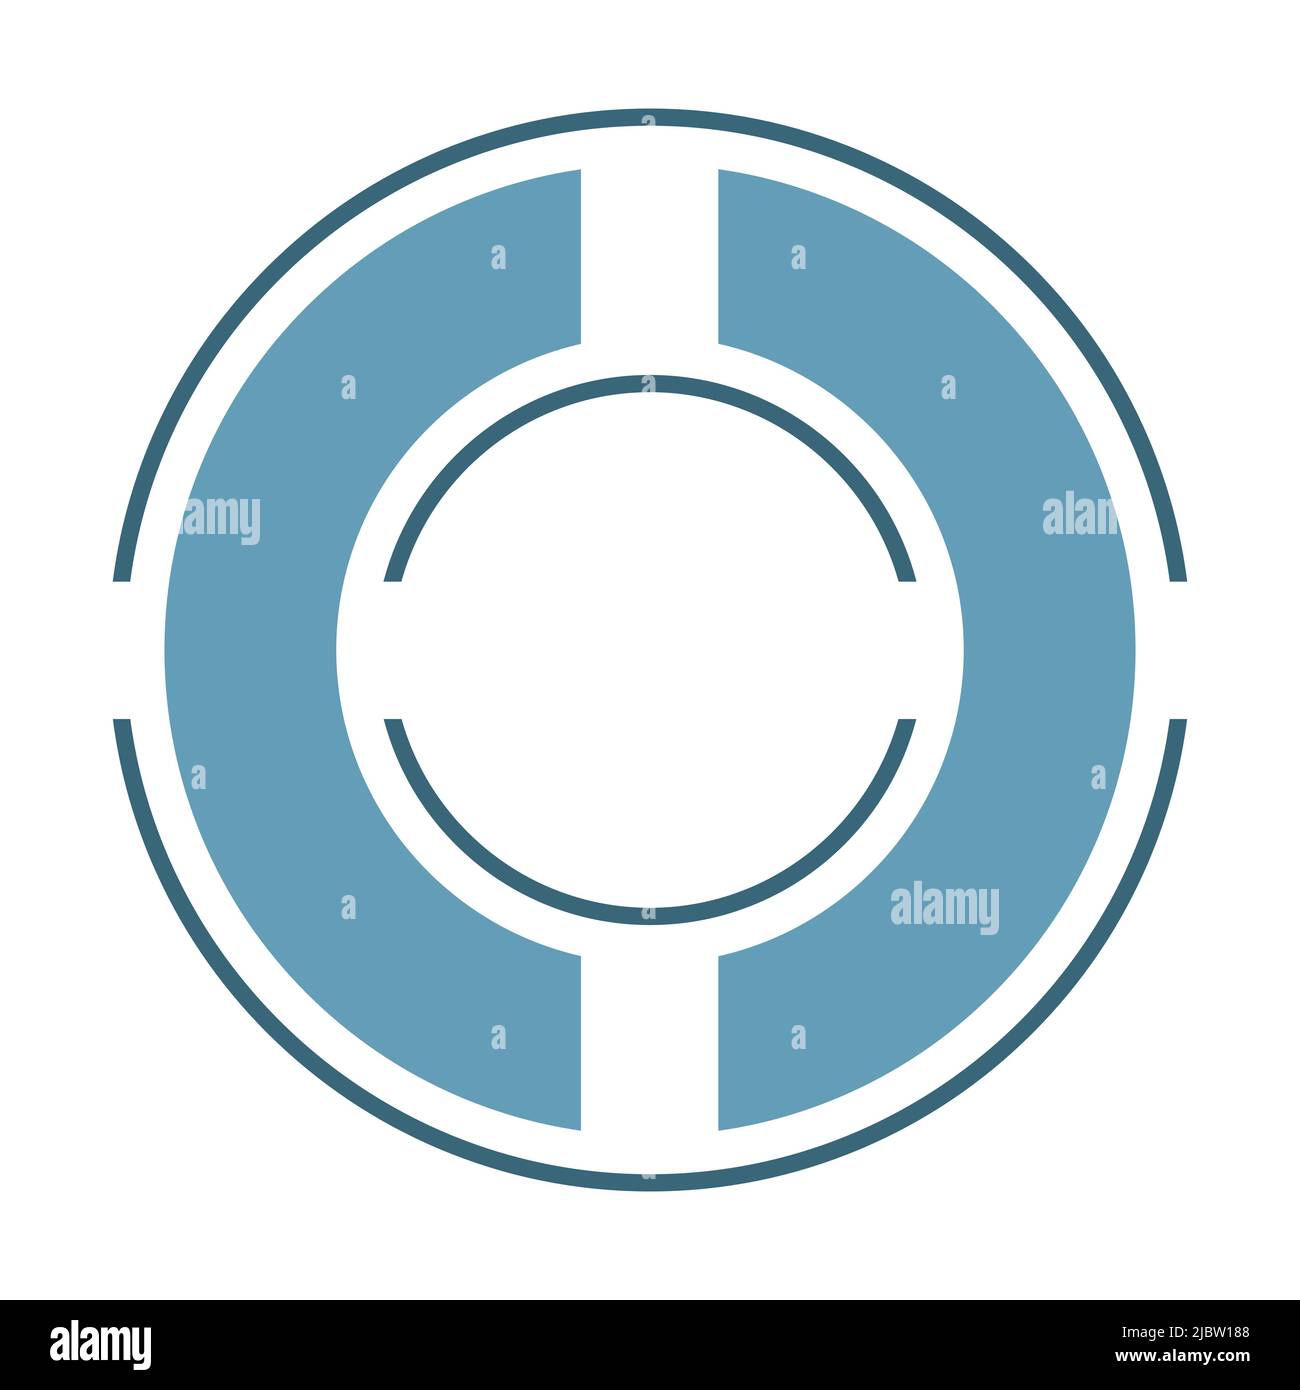 3 cercles fins et larges coupés en pièces, un anneau à l'intérieur d'un autre, icône de visée. Nuances de bleu, conception plate sur fond blanc illustration vectorielle. Illustration de Vecteur